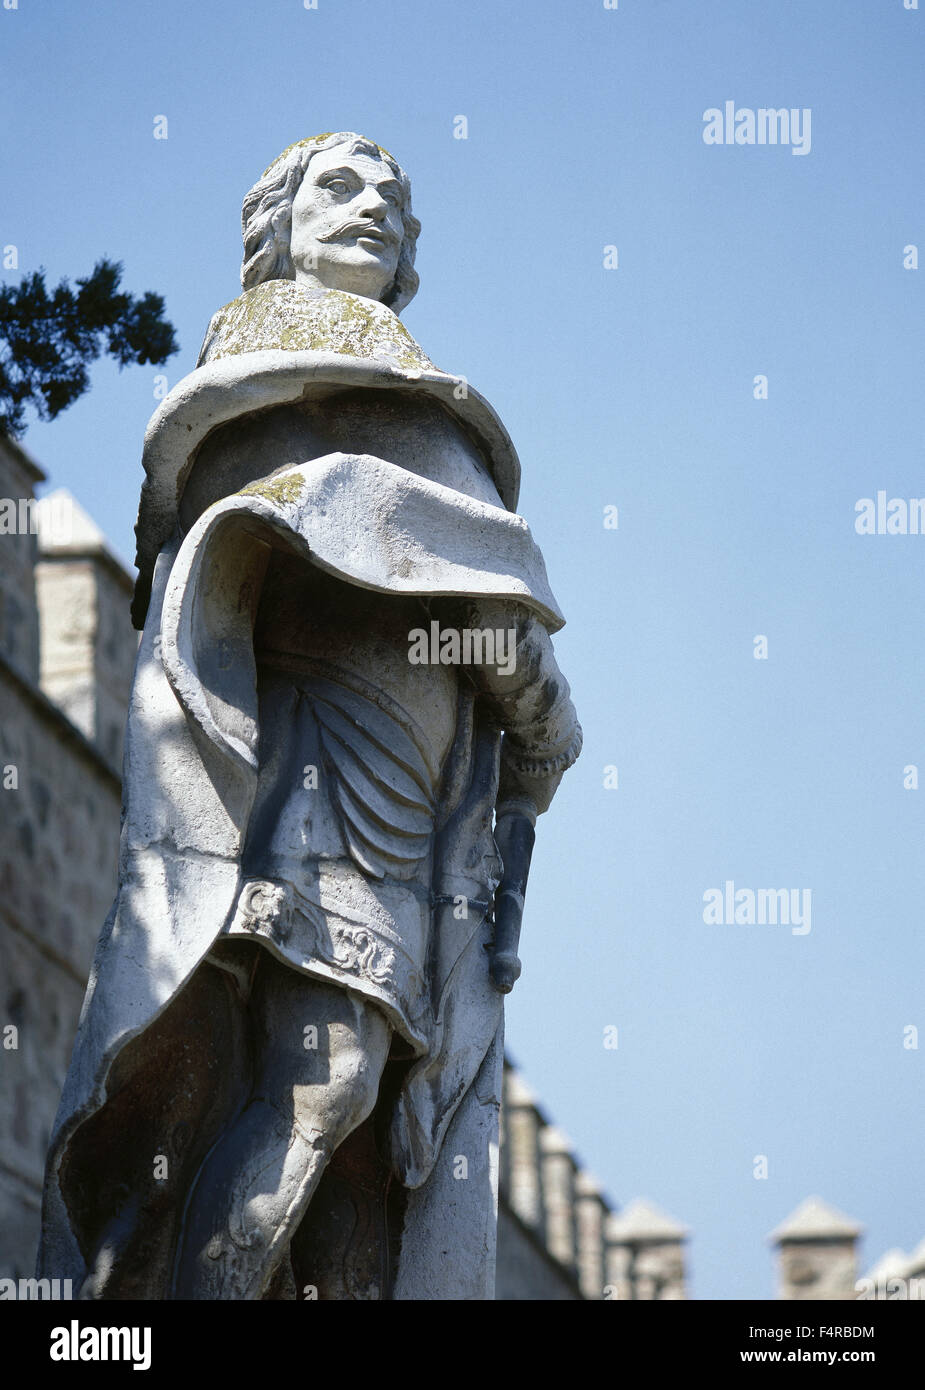 Alfonso VI di Leon (1040-1109). Re di Leon. Chiamato il coraggioso. Statua di Felipe del corral. Il XVIII secolo. Toledo. Castilla la Mancha. Spagna. Foto Stock